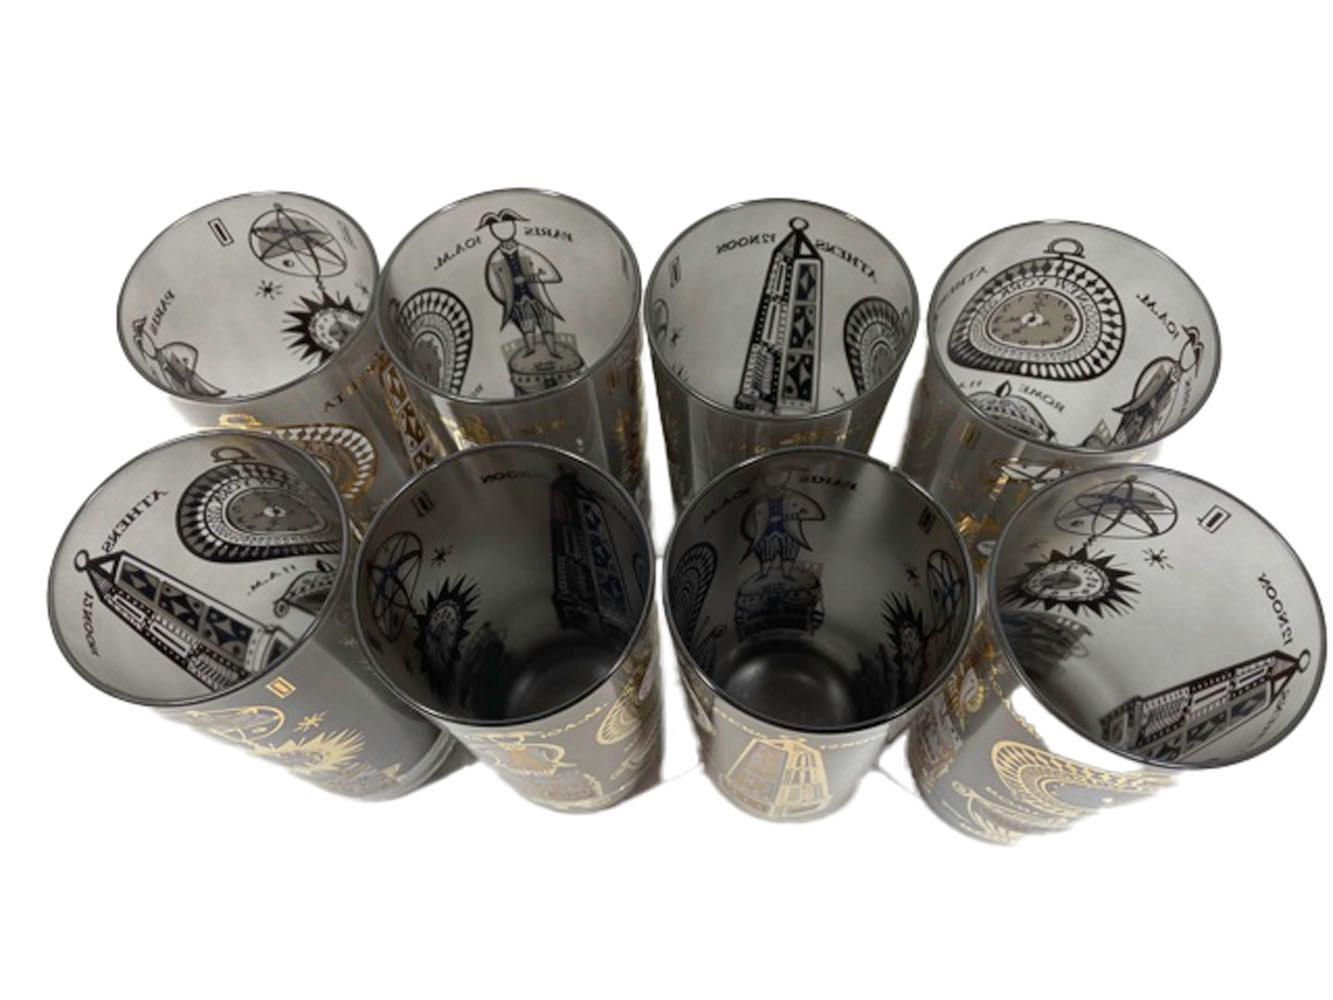 Ensemble de 16 verres Georges Briard de style Mid-Century Modern dans le motif International Time Zone. Coût de 8 verres highball et de 8 verres double old fashioned en verre transparent dont l'intérieur est dépoli en gris/noir et dont l'extérieur